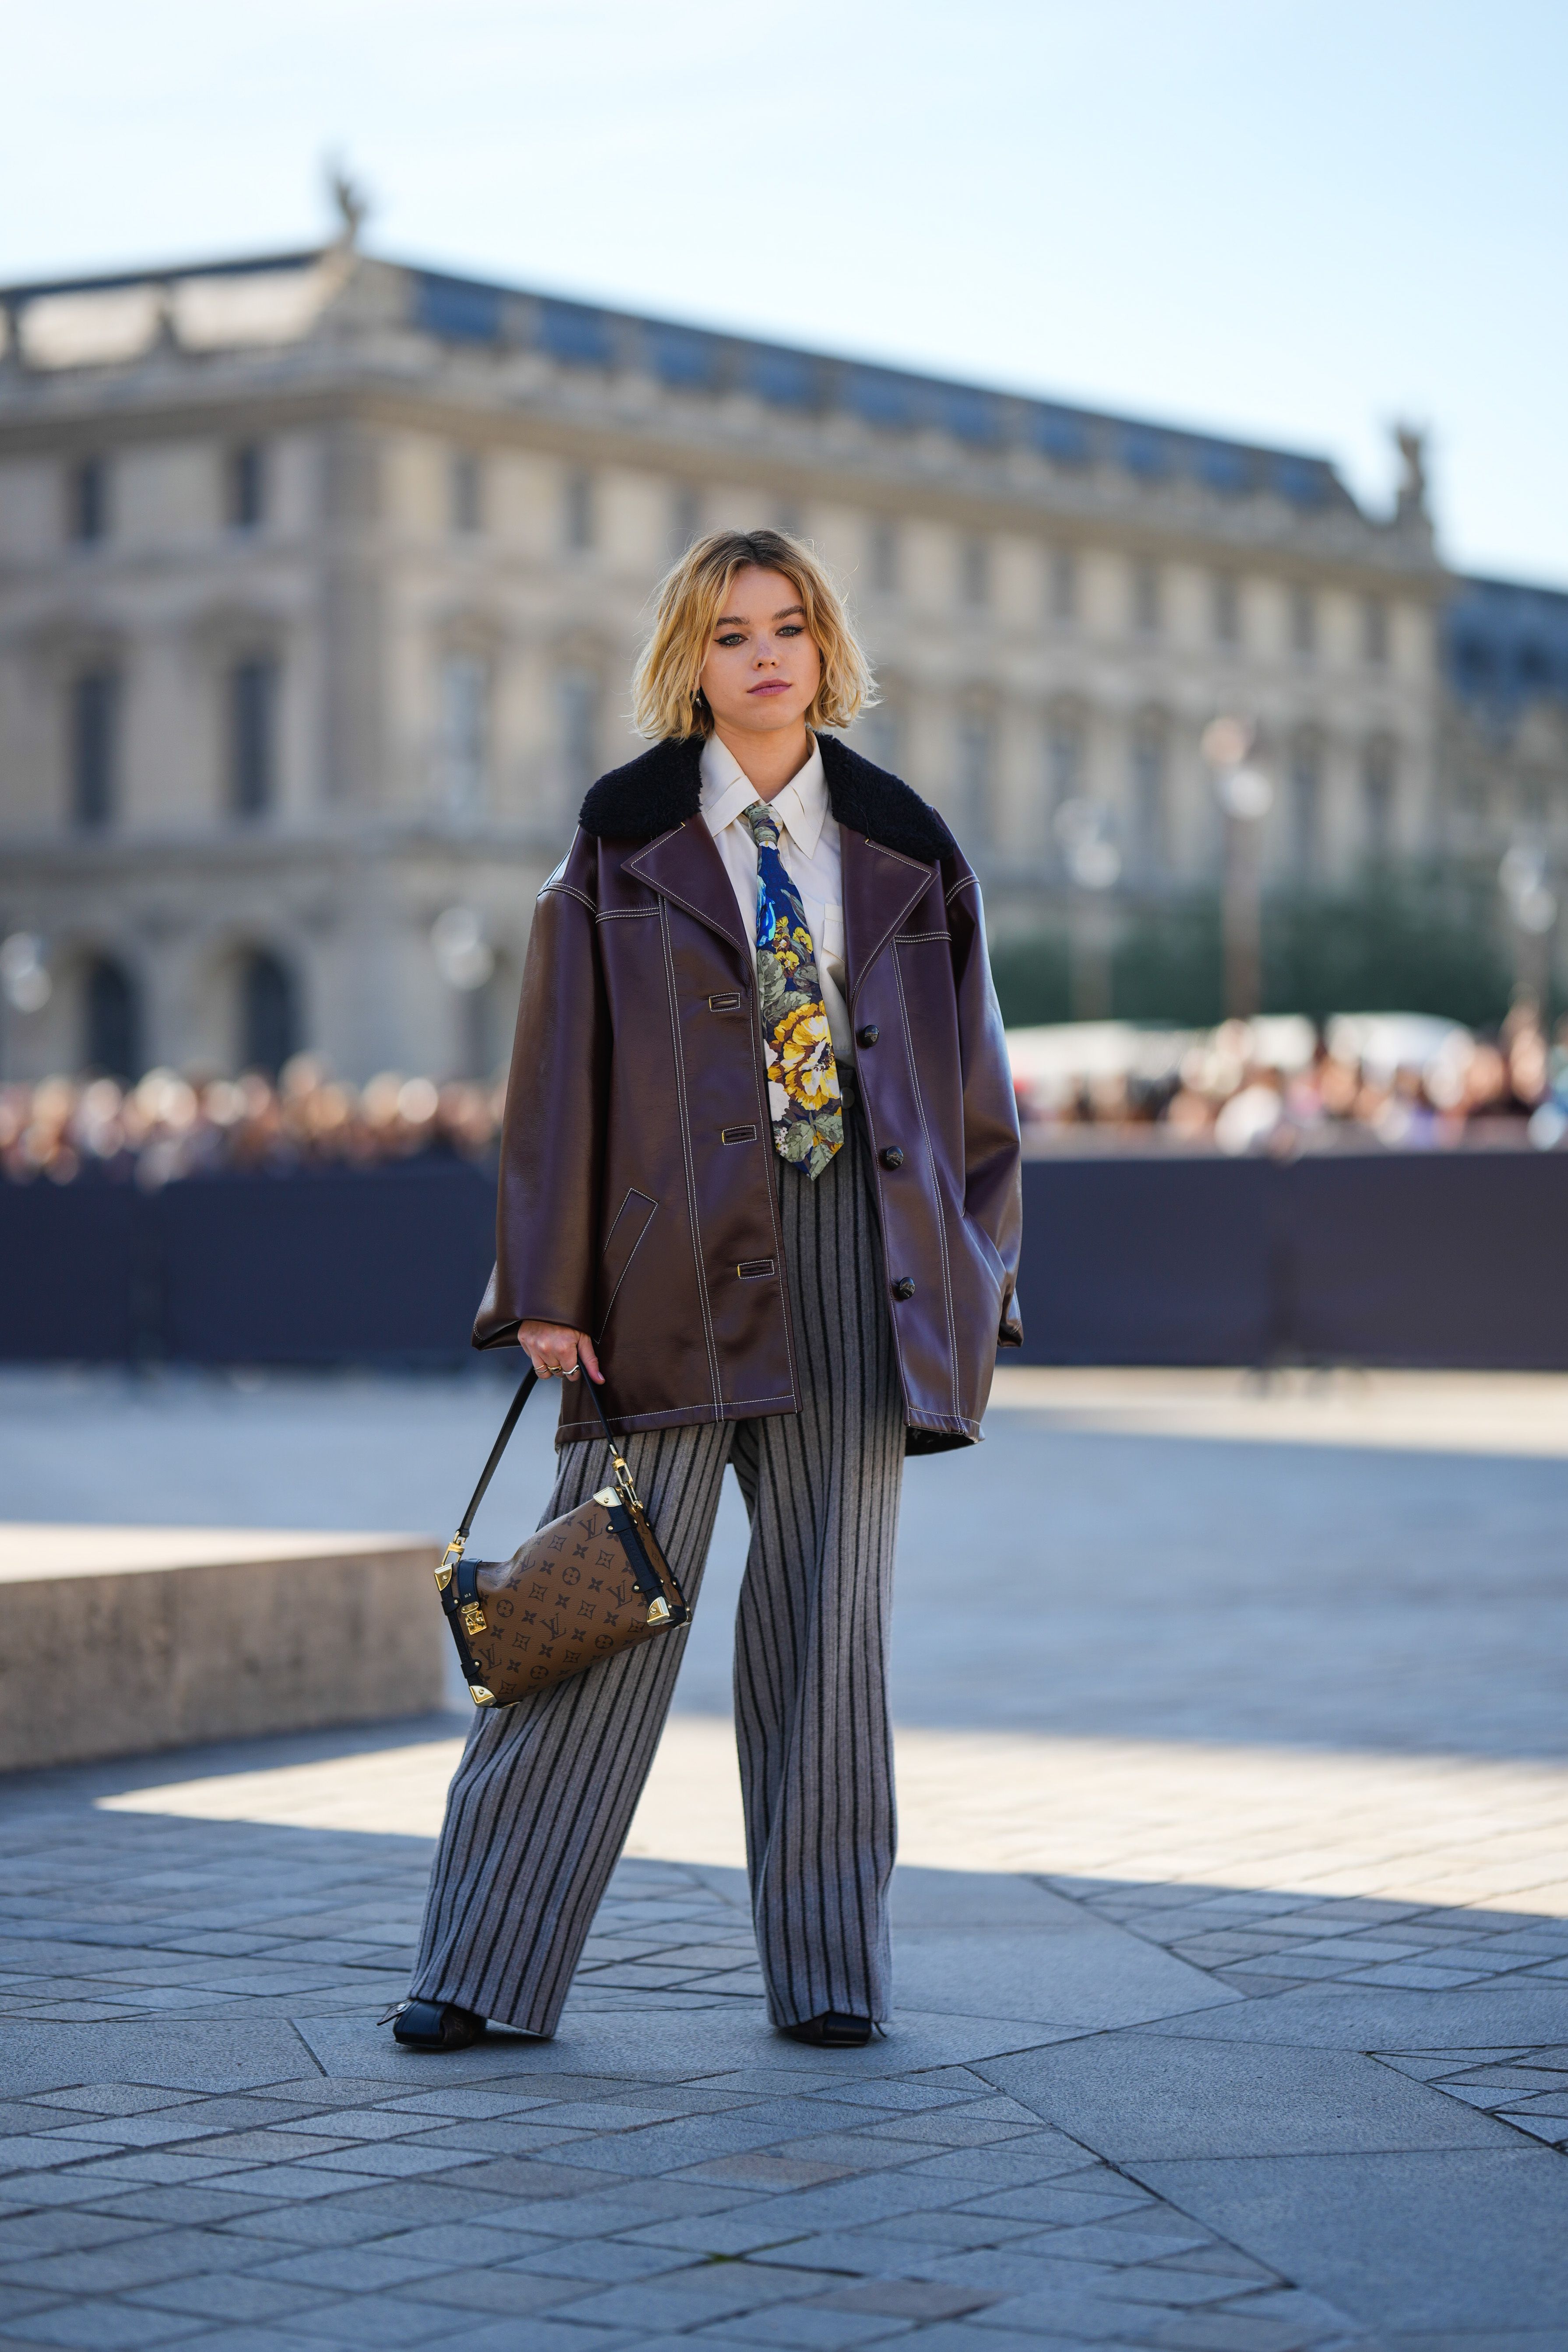 Louis Vuitton lo vuelve a hacer: este es el bolso más deseado de